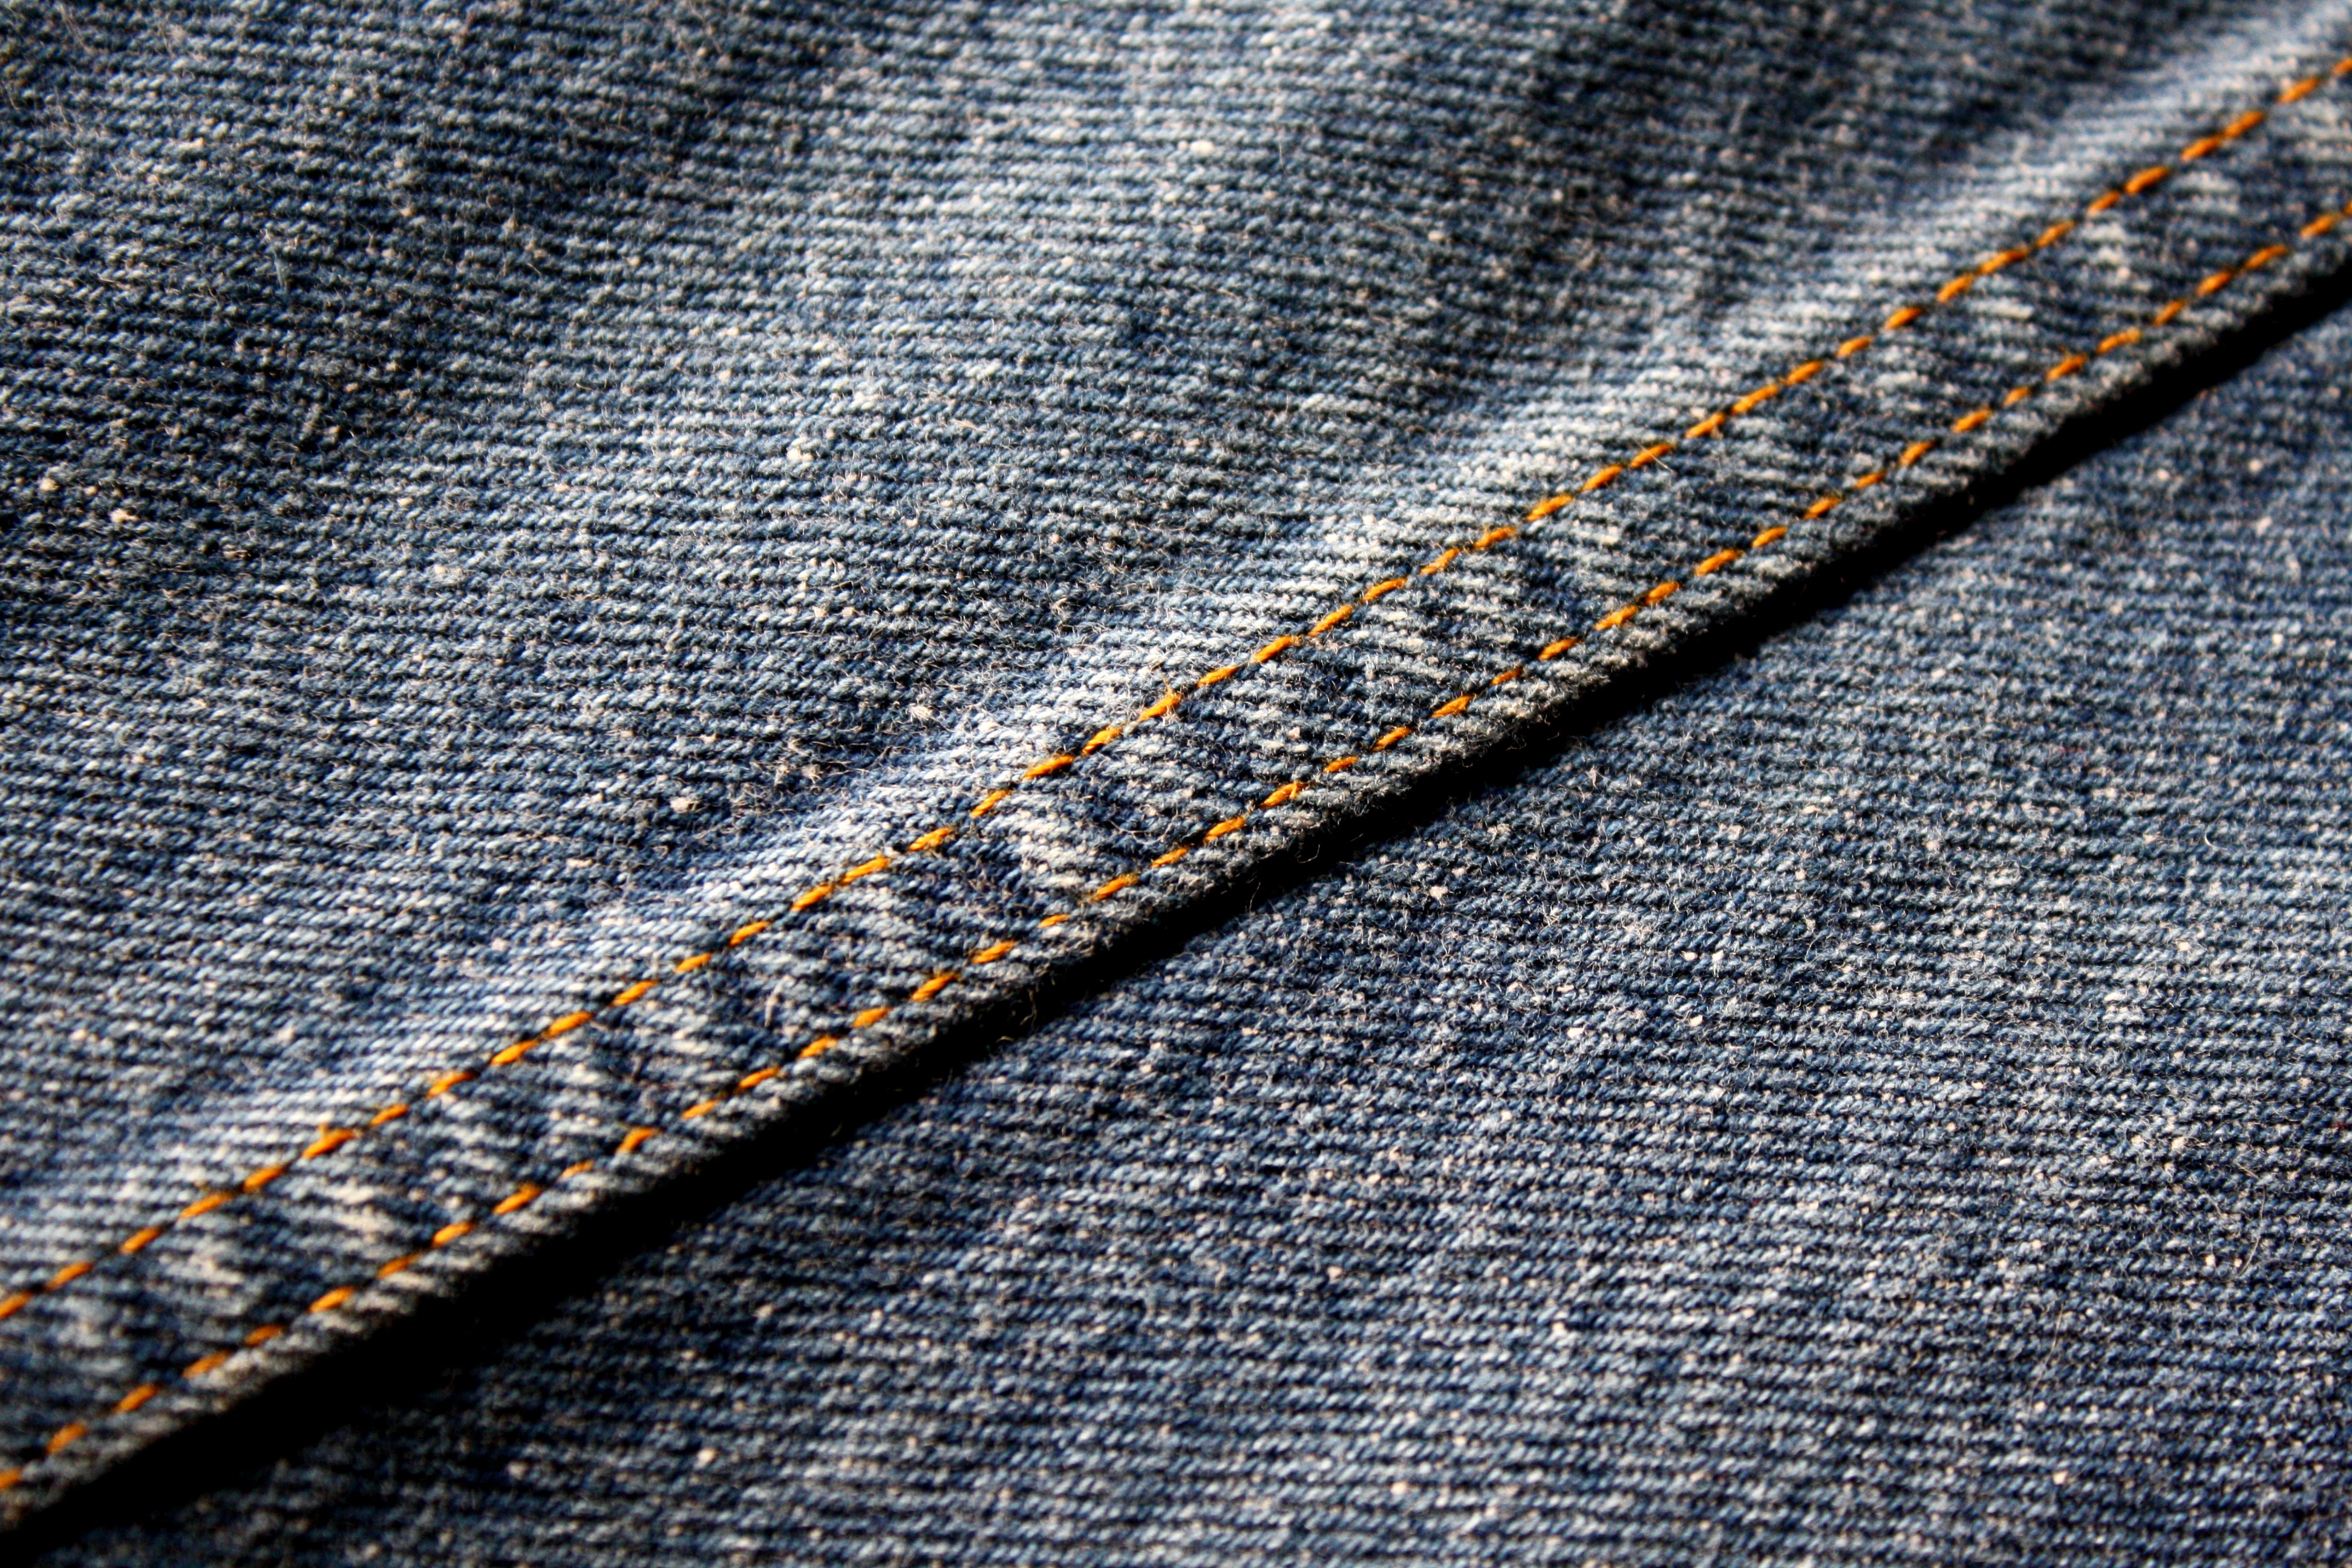 Seam On Denim Blue Jeans Picture Free Photograph Photos Public Domain